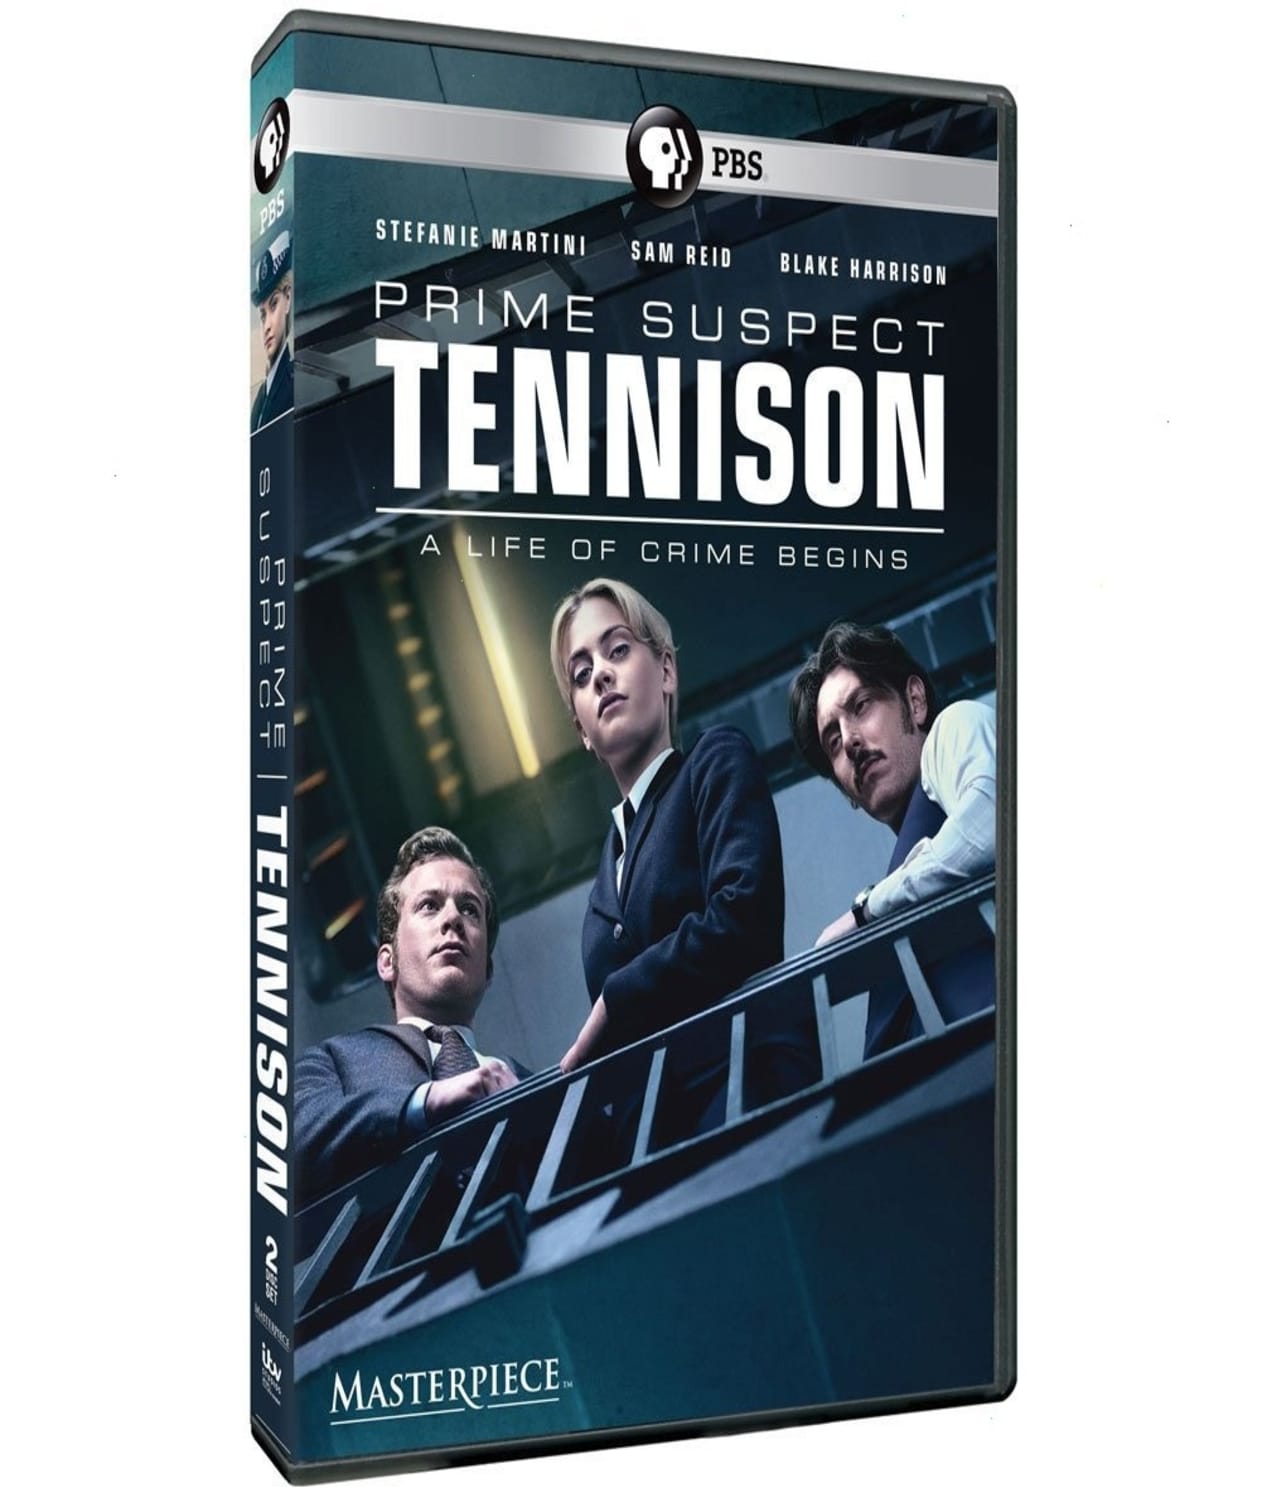 Prime Suspect – Tennison (Blu-ray)